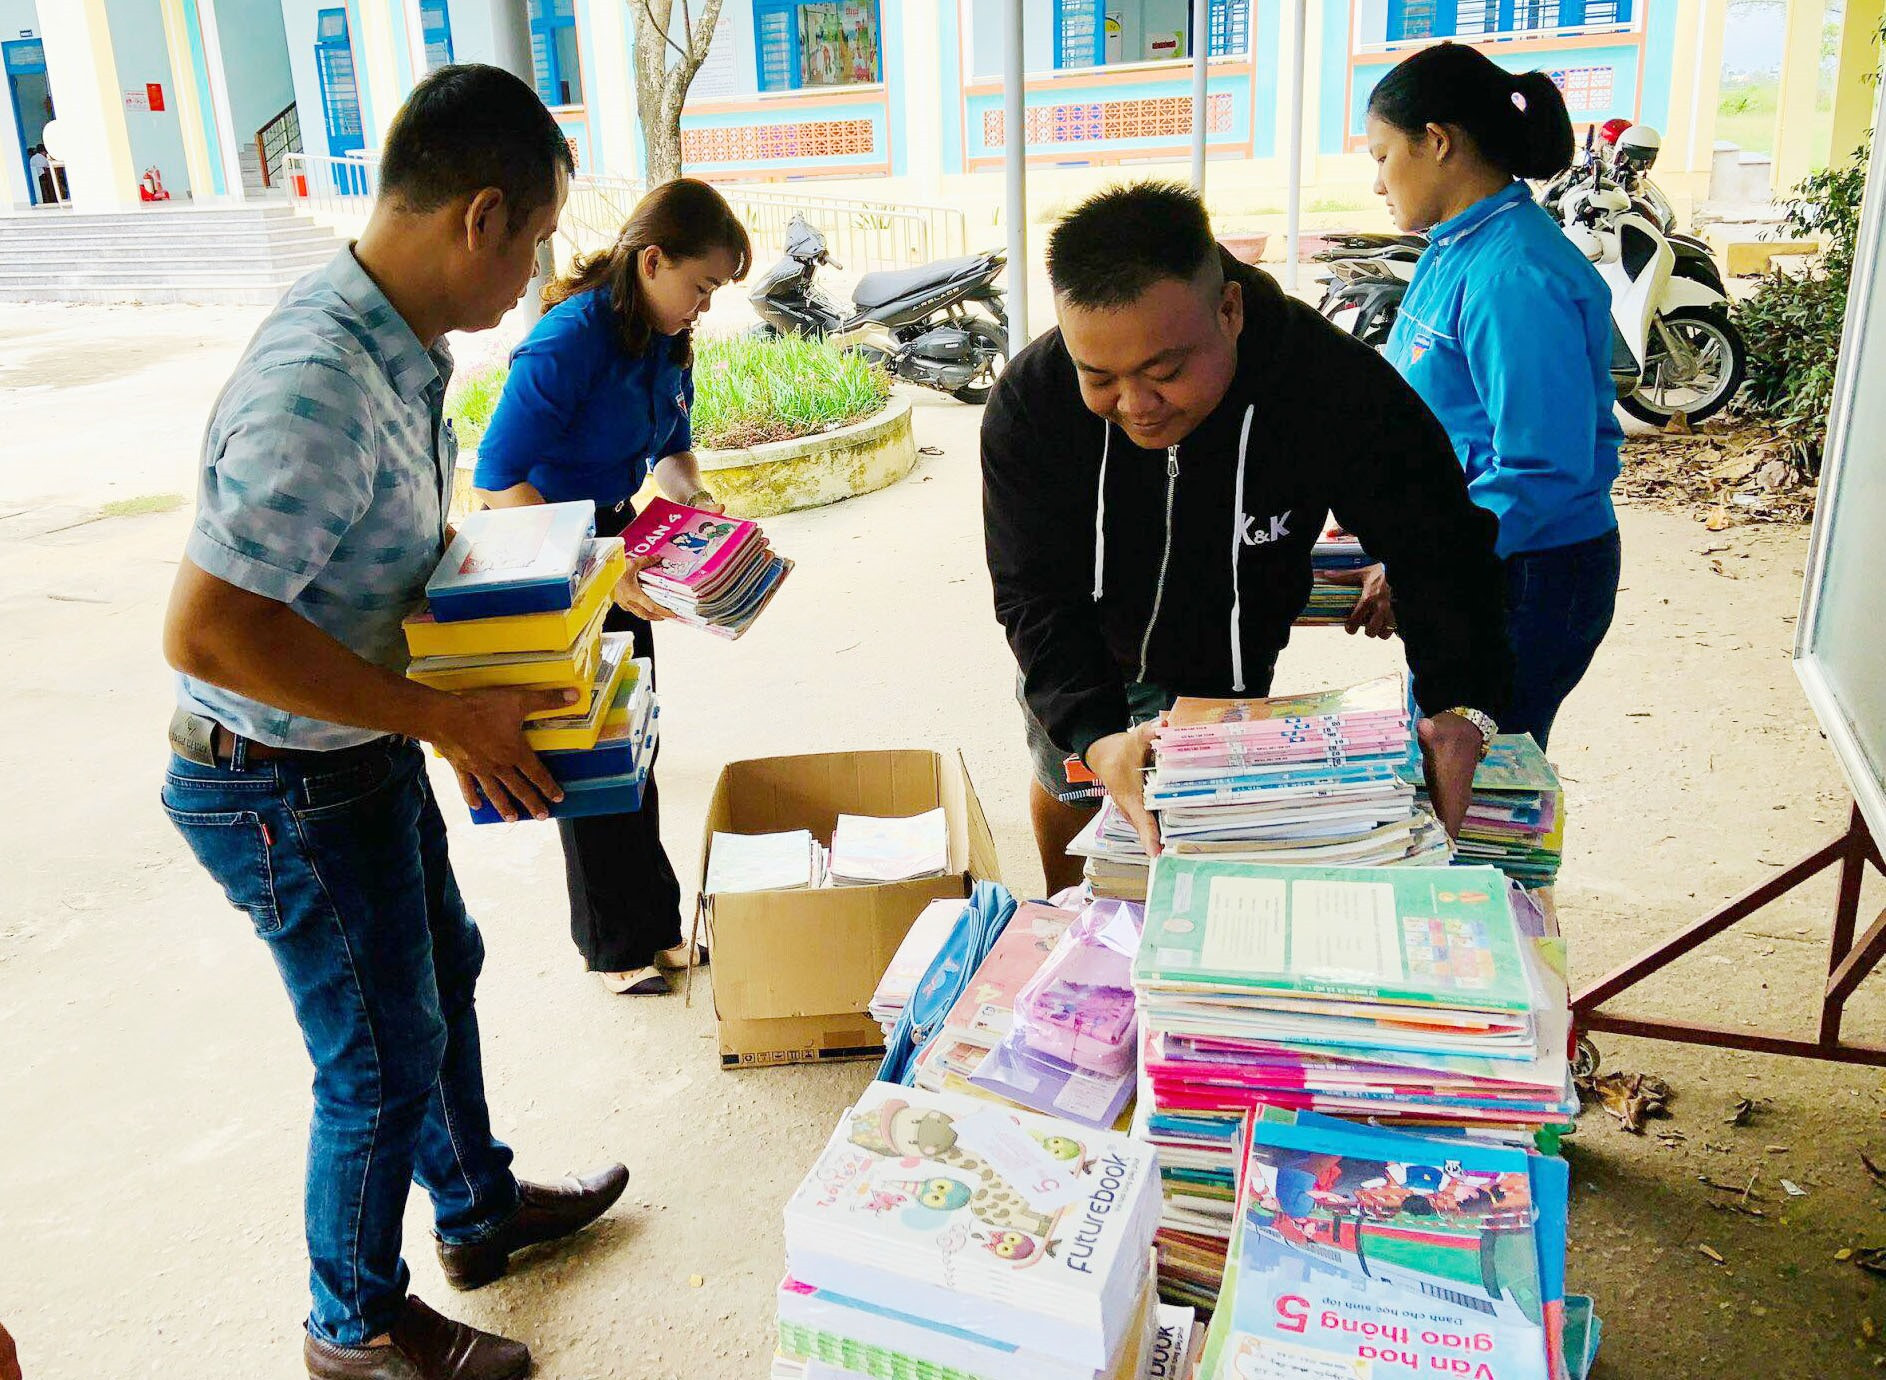 Các thầy cô giáo và đoàn viên thanh niên xếp sách vở ủng hộ từ chương trình để gửi tặng cho học sinh vùng bão lũ. Ảnh: G.B